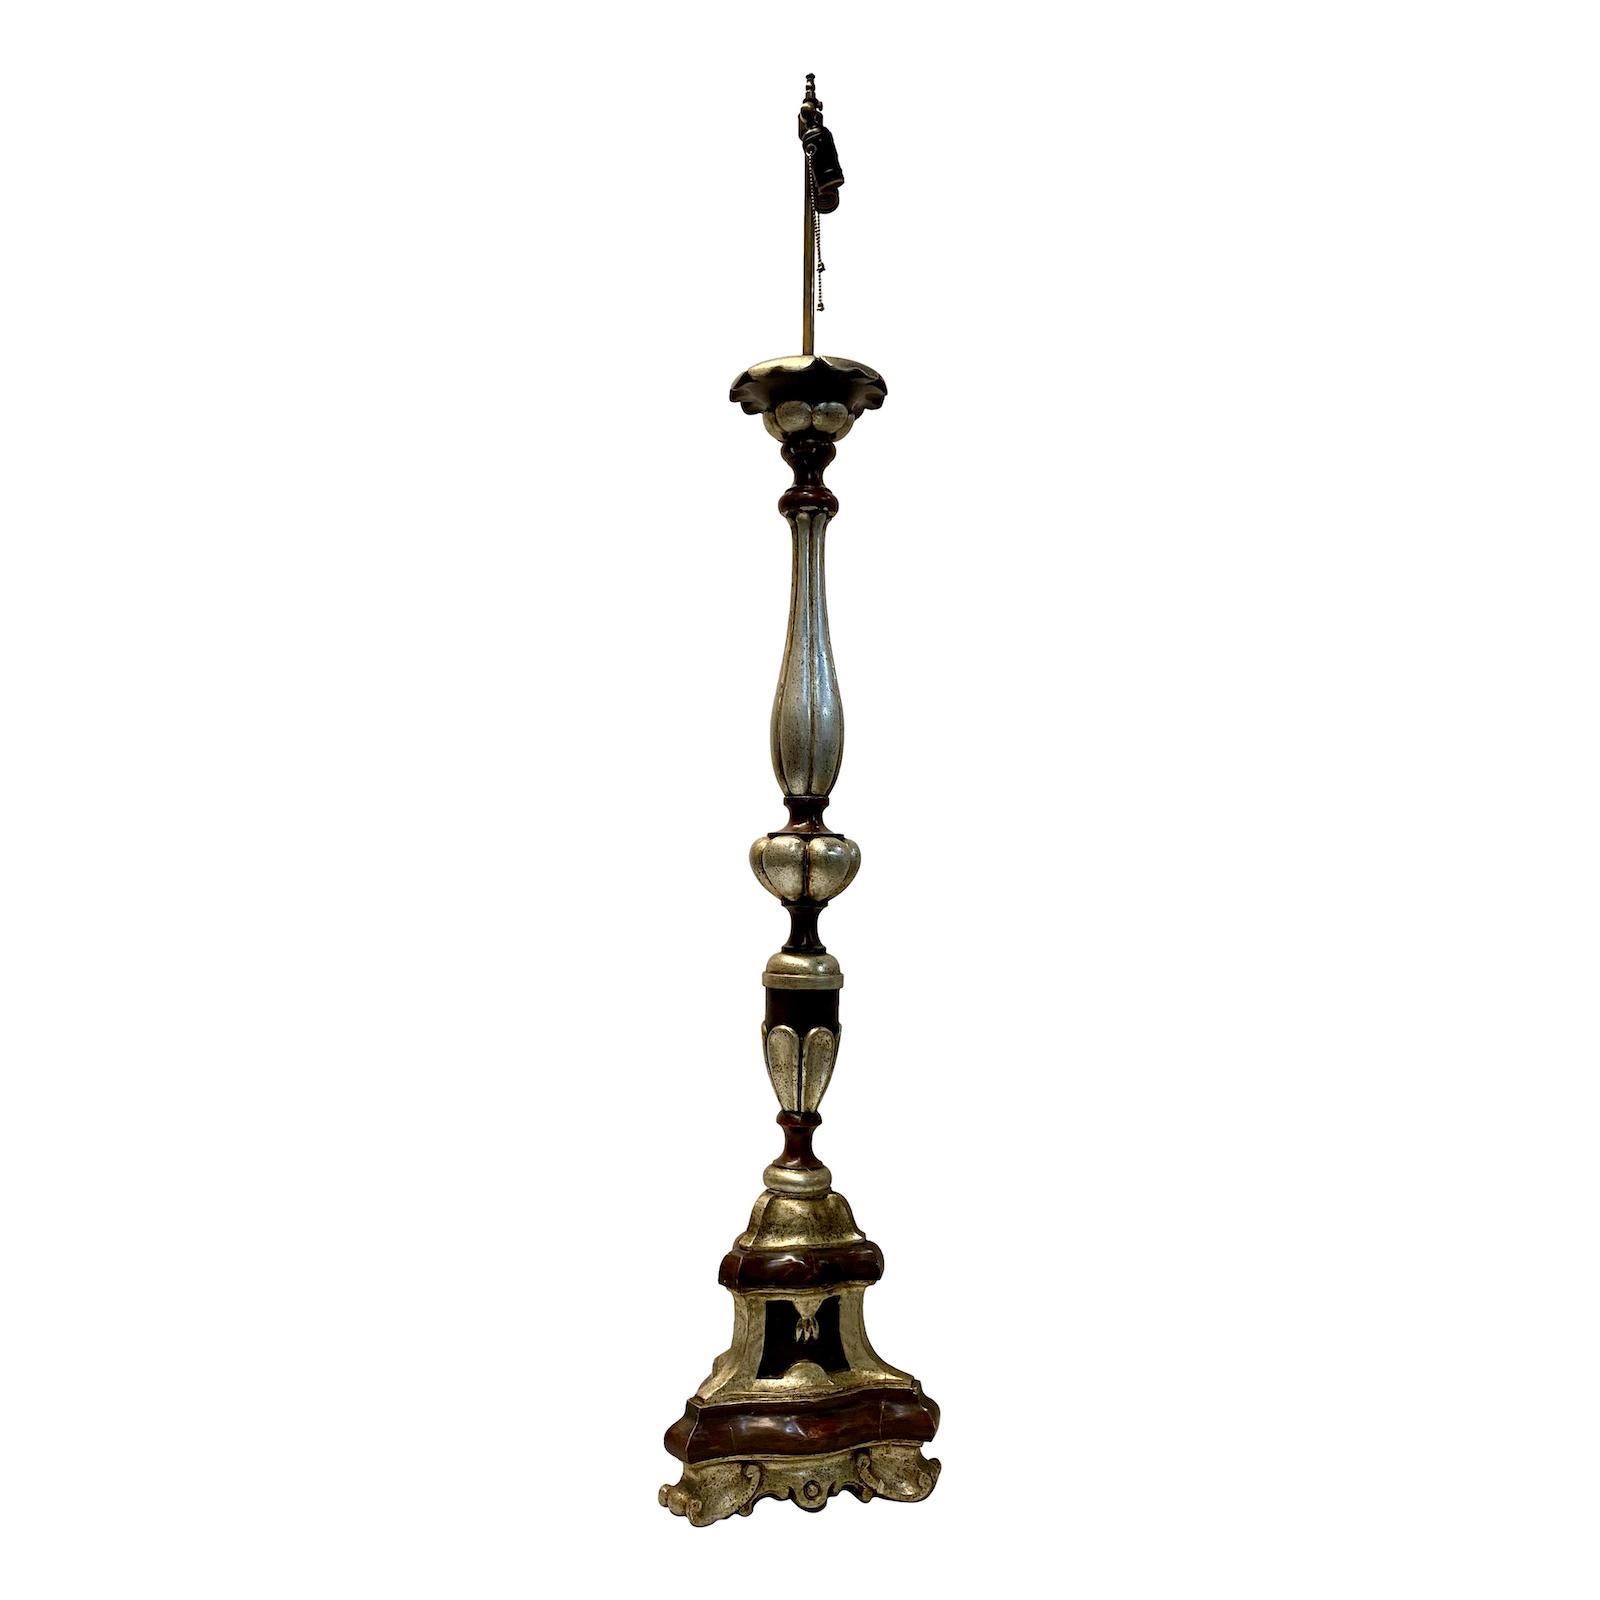 Eine einzelne italienische Stehlampe aus geschnitztem Holz aus der Zeit um 1920 mit silbernem Anstrich.

Abmessungen:
Höhe des Körpers: 50.25